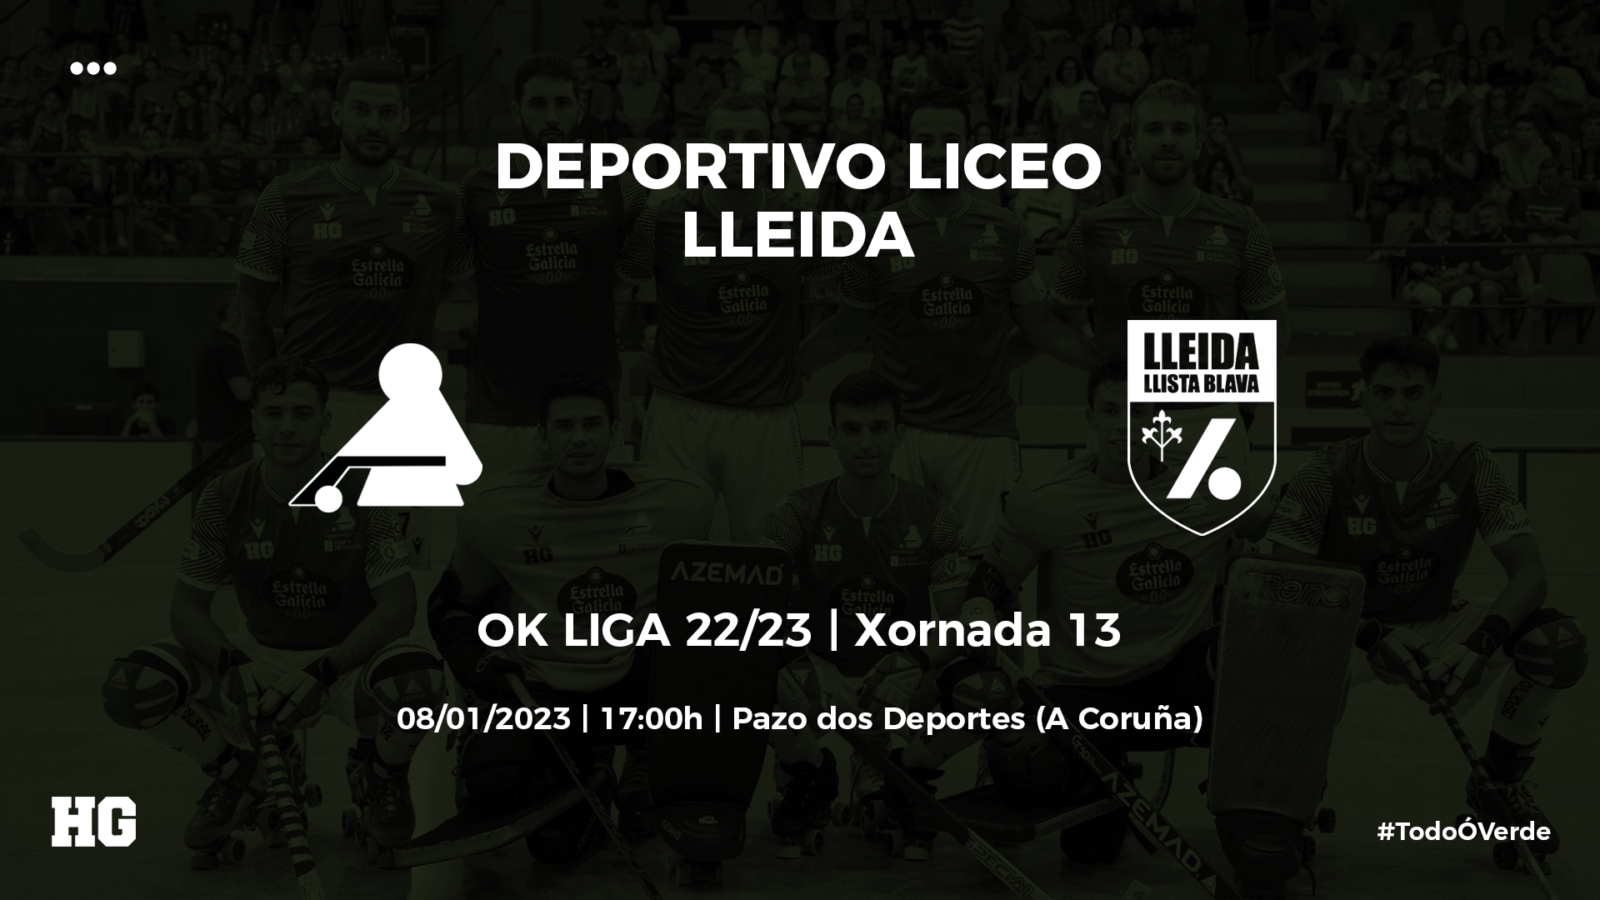 Entradas para o Deportivo Liceo-Lleida (OK Liga 22/23, xornada 13)